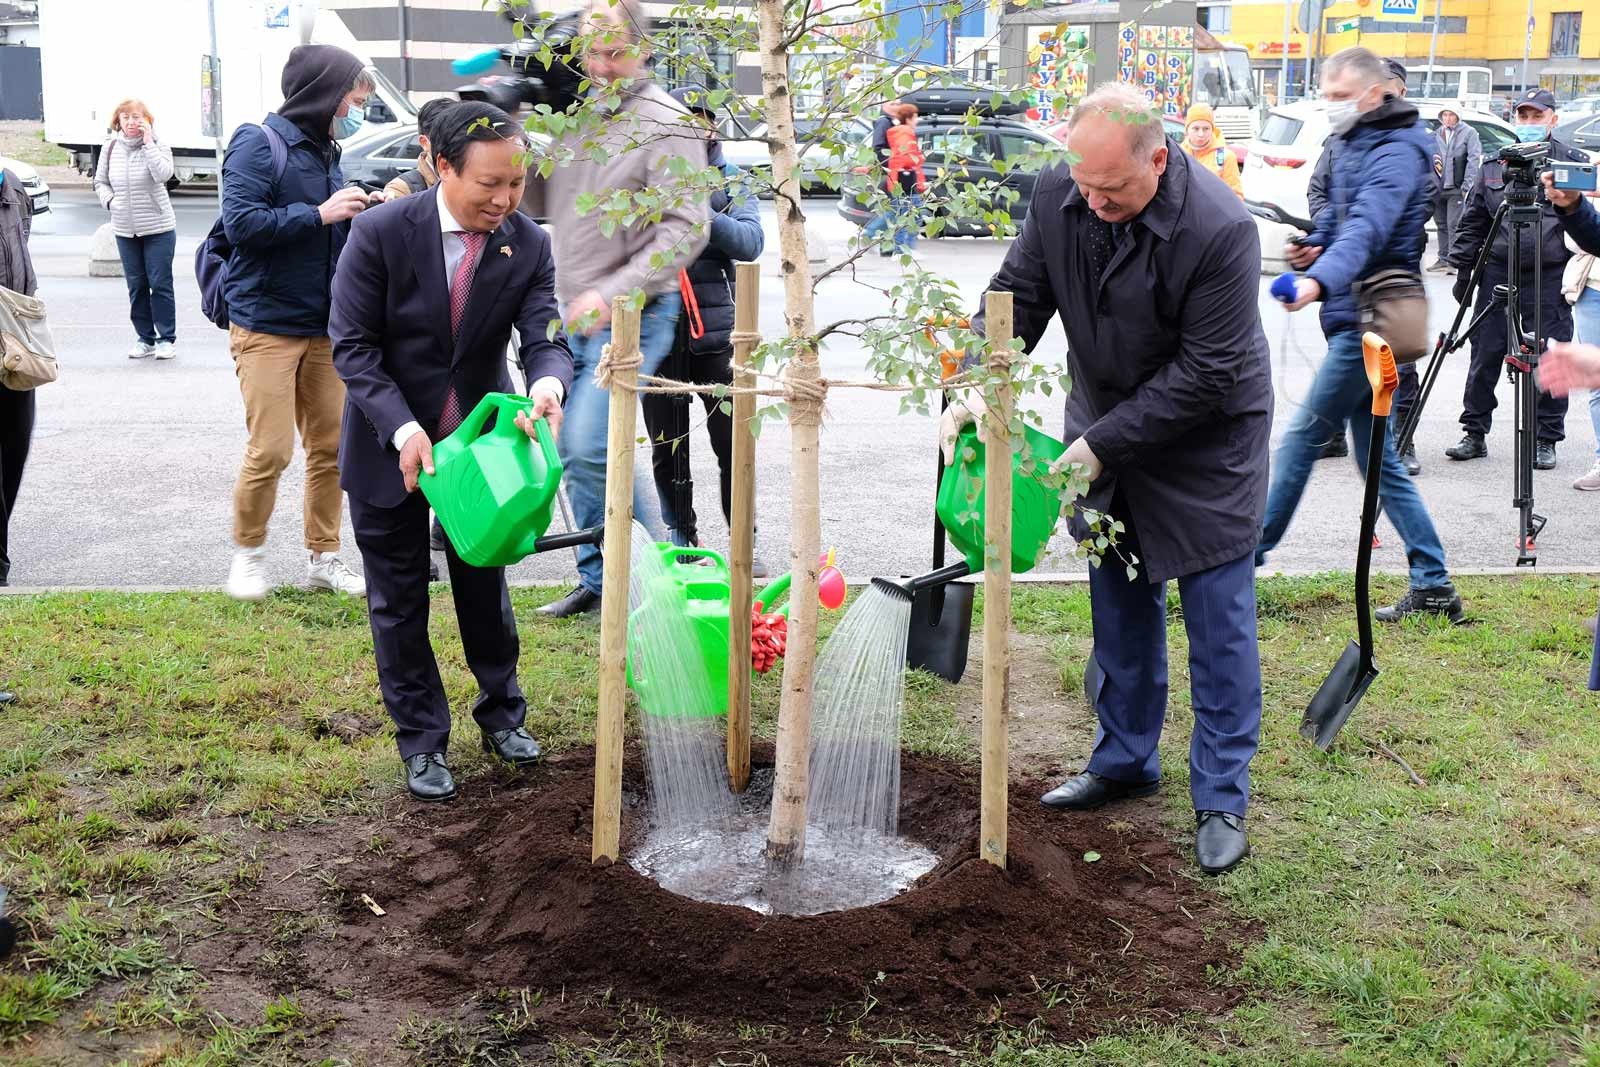 Đại sứ Ngô Đức Mạnh cùng ông Nhikolai Bondarenco, Phó Thống đốc Saint Petersburg trồng cây bạch dương lưu niệm sau buổi lễ đặt phiến đá.